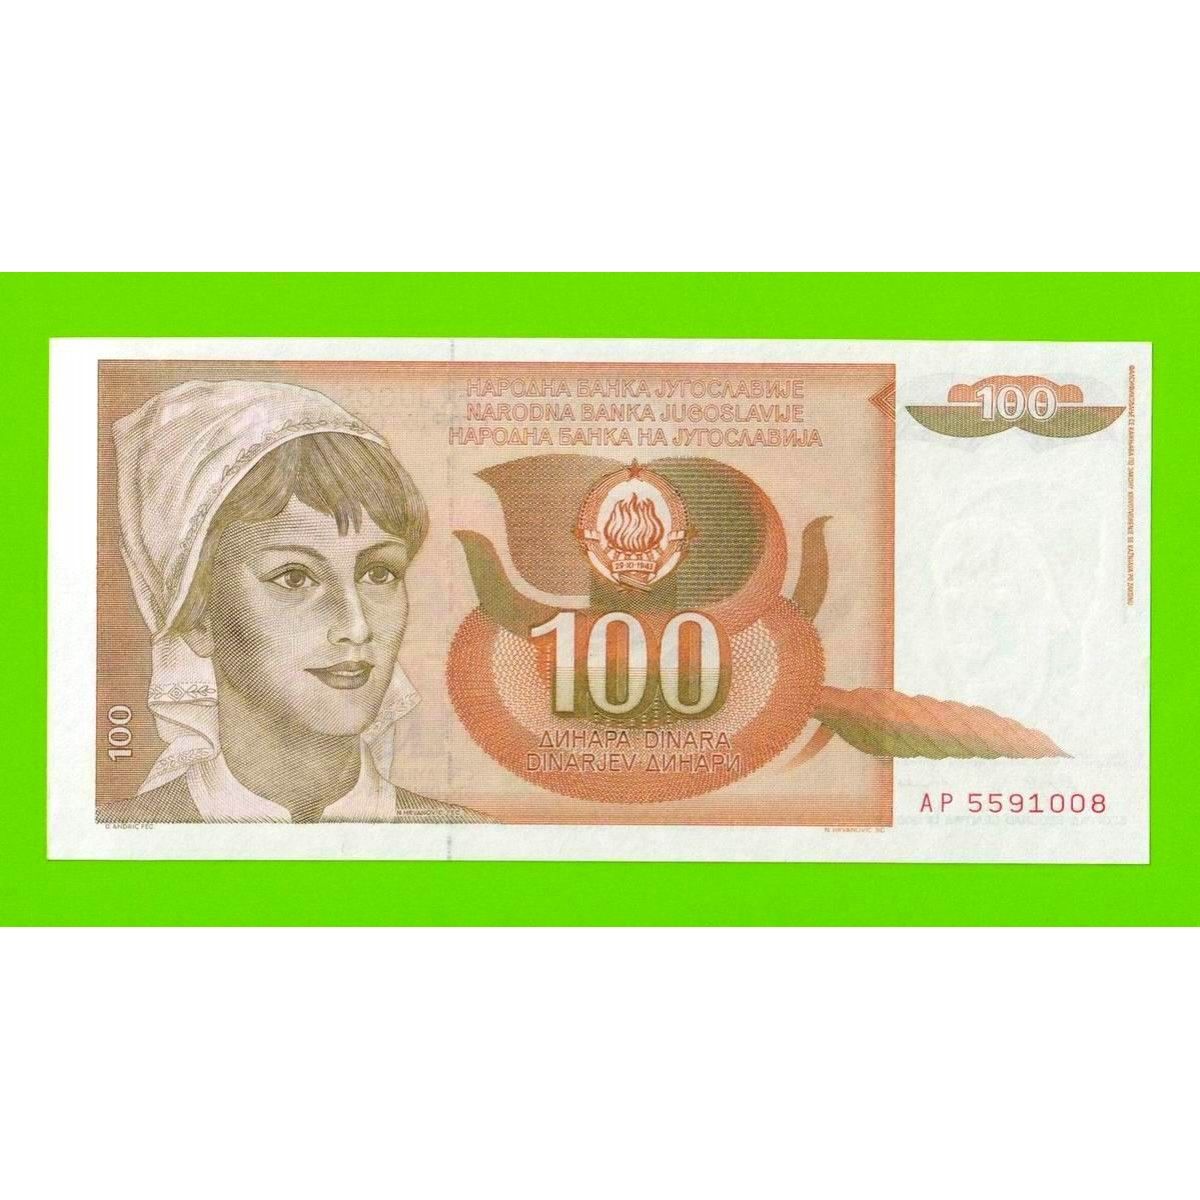 Миллион песо в рублях. Банкнота Африки номинал 1000000.